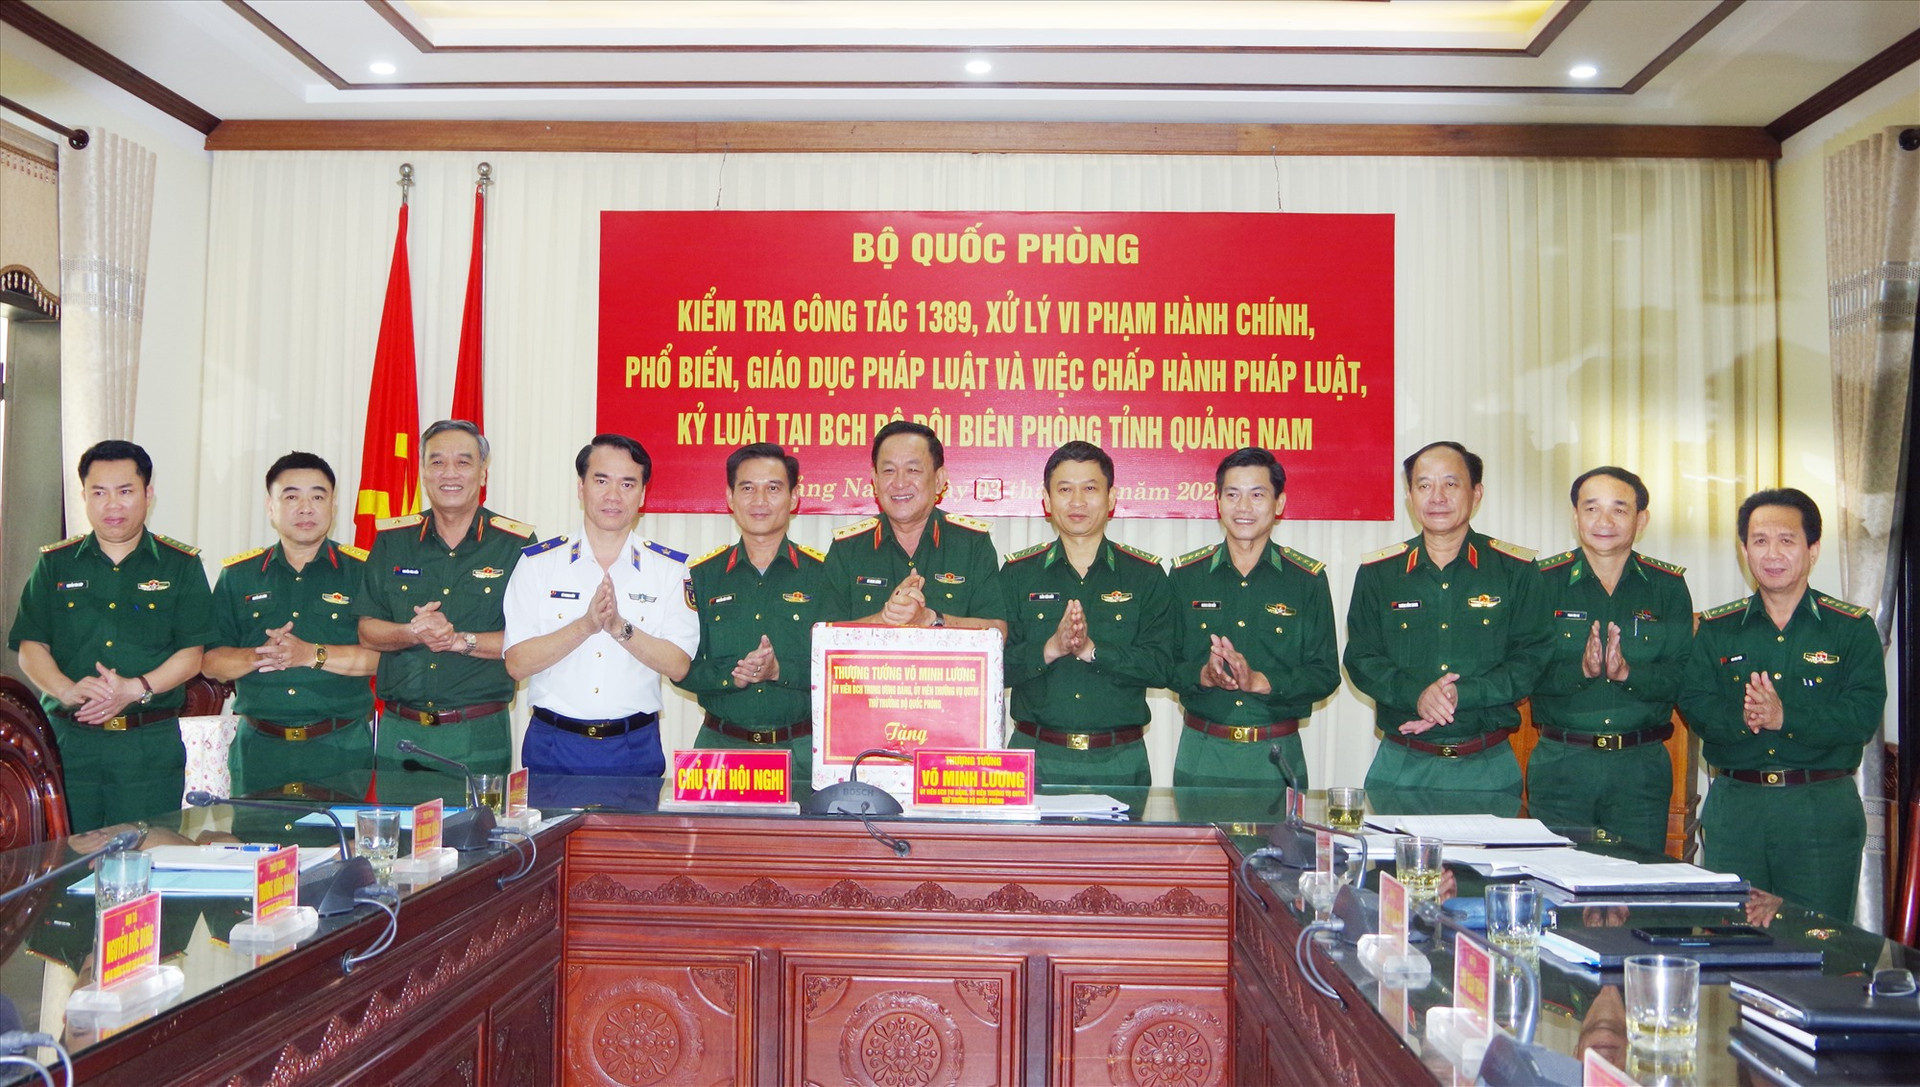 Thượng tướng Võ Minh Lương và đoàn công tác Bộ Quốc phòng tặng quà Bộ Chỉ huy BĐBP tỉnh Quảng Nam và Bộ Chỉ huy Quân sự tỉnh Quảng Nam. Ảnh: HỒNG ANH